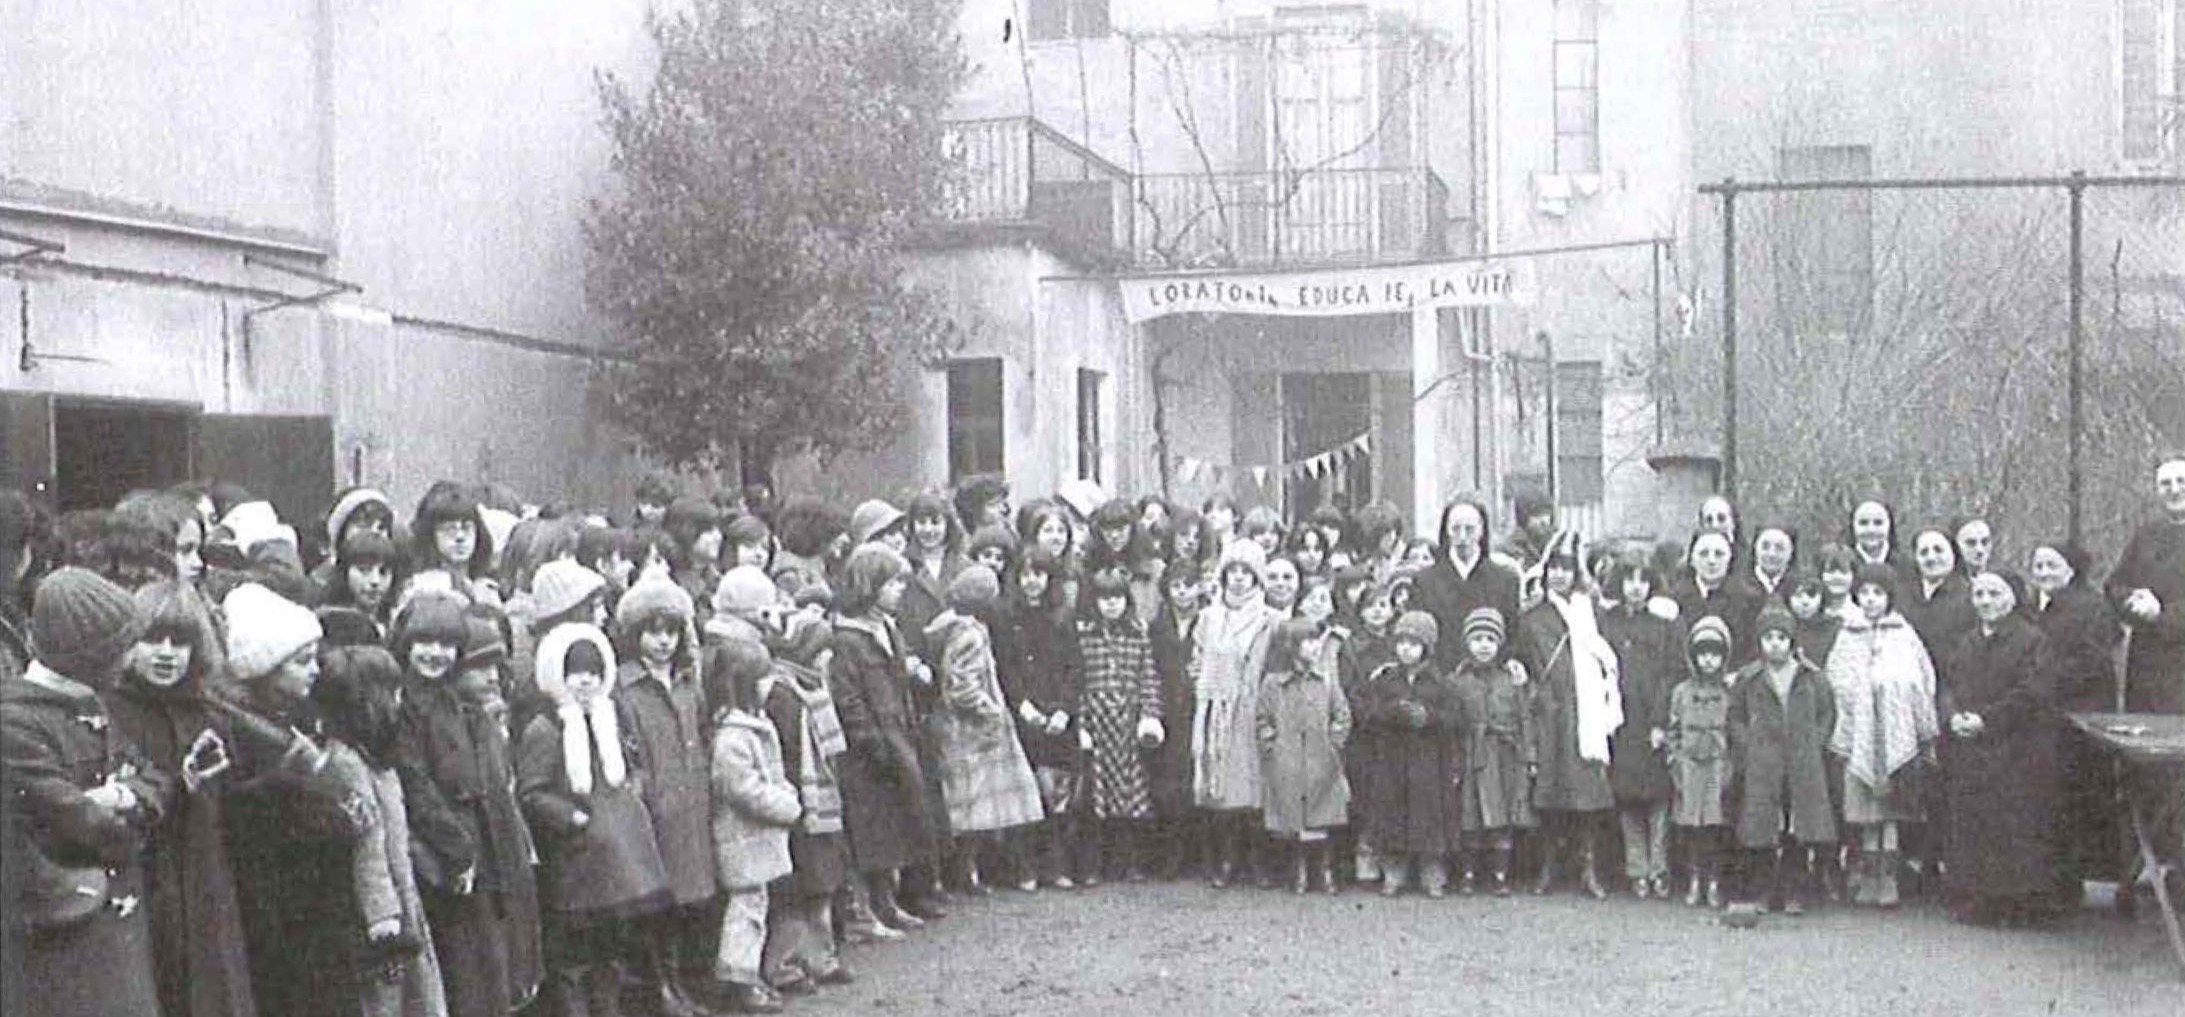 1978 L'Orntorio femminile raccolto attorno alle Suore della Famiglia, del Sacro Cuore di GesÌì.. i,n occasione del 40° della loro presenza al Patronato Sant 'Antonio